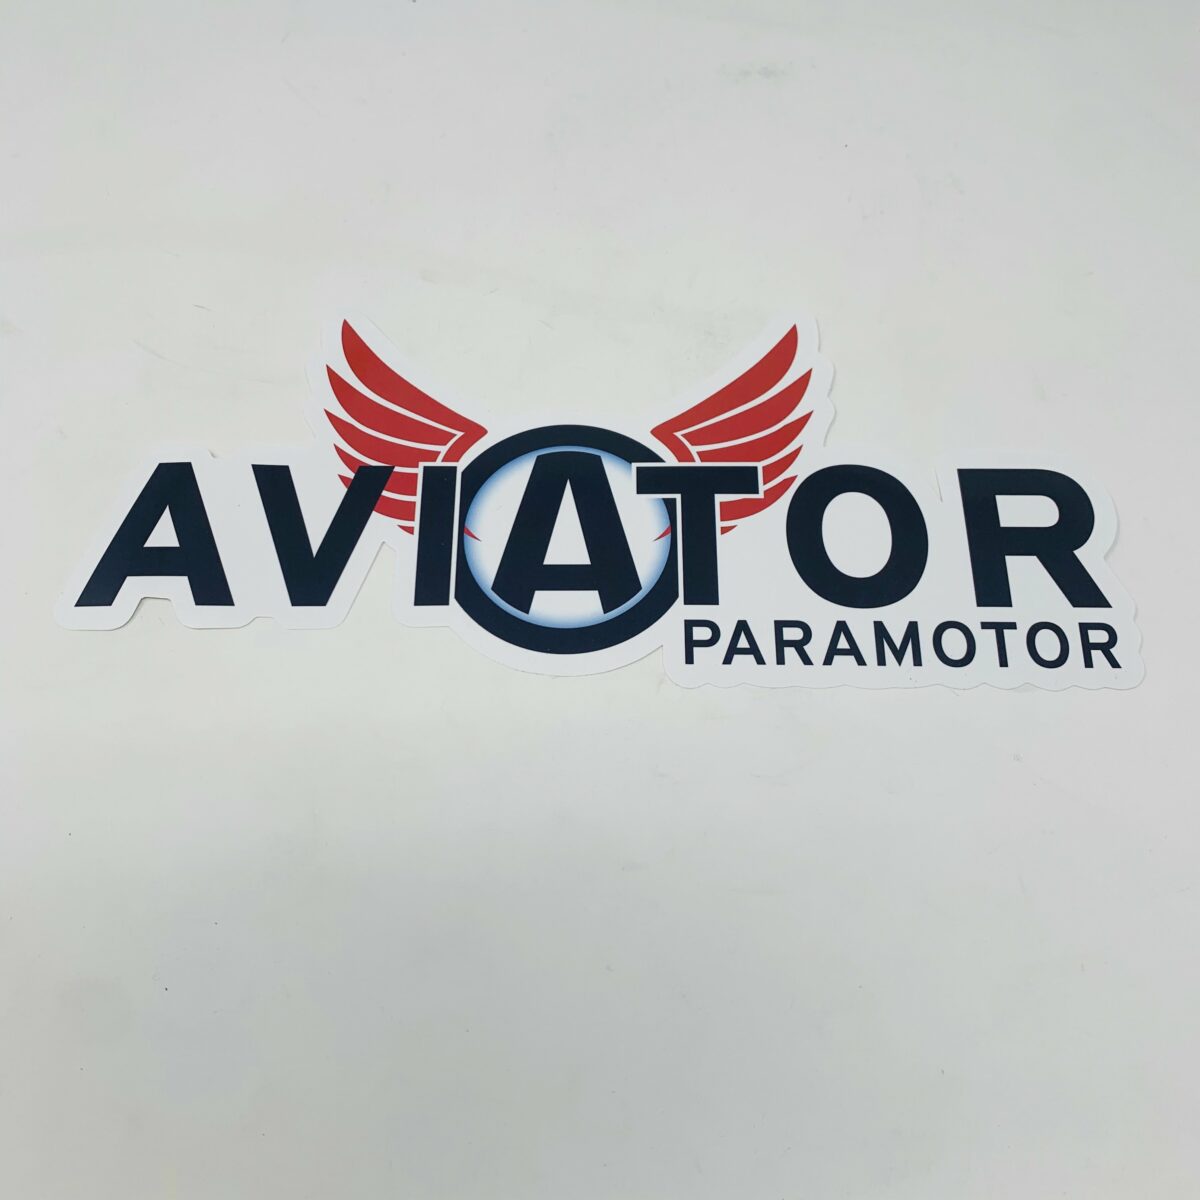 Aviator Paramotor Stickers